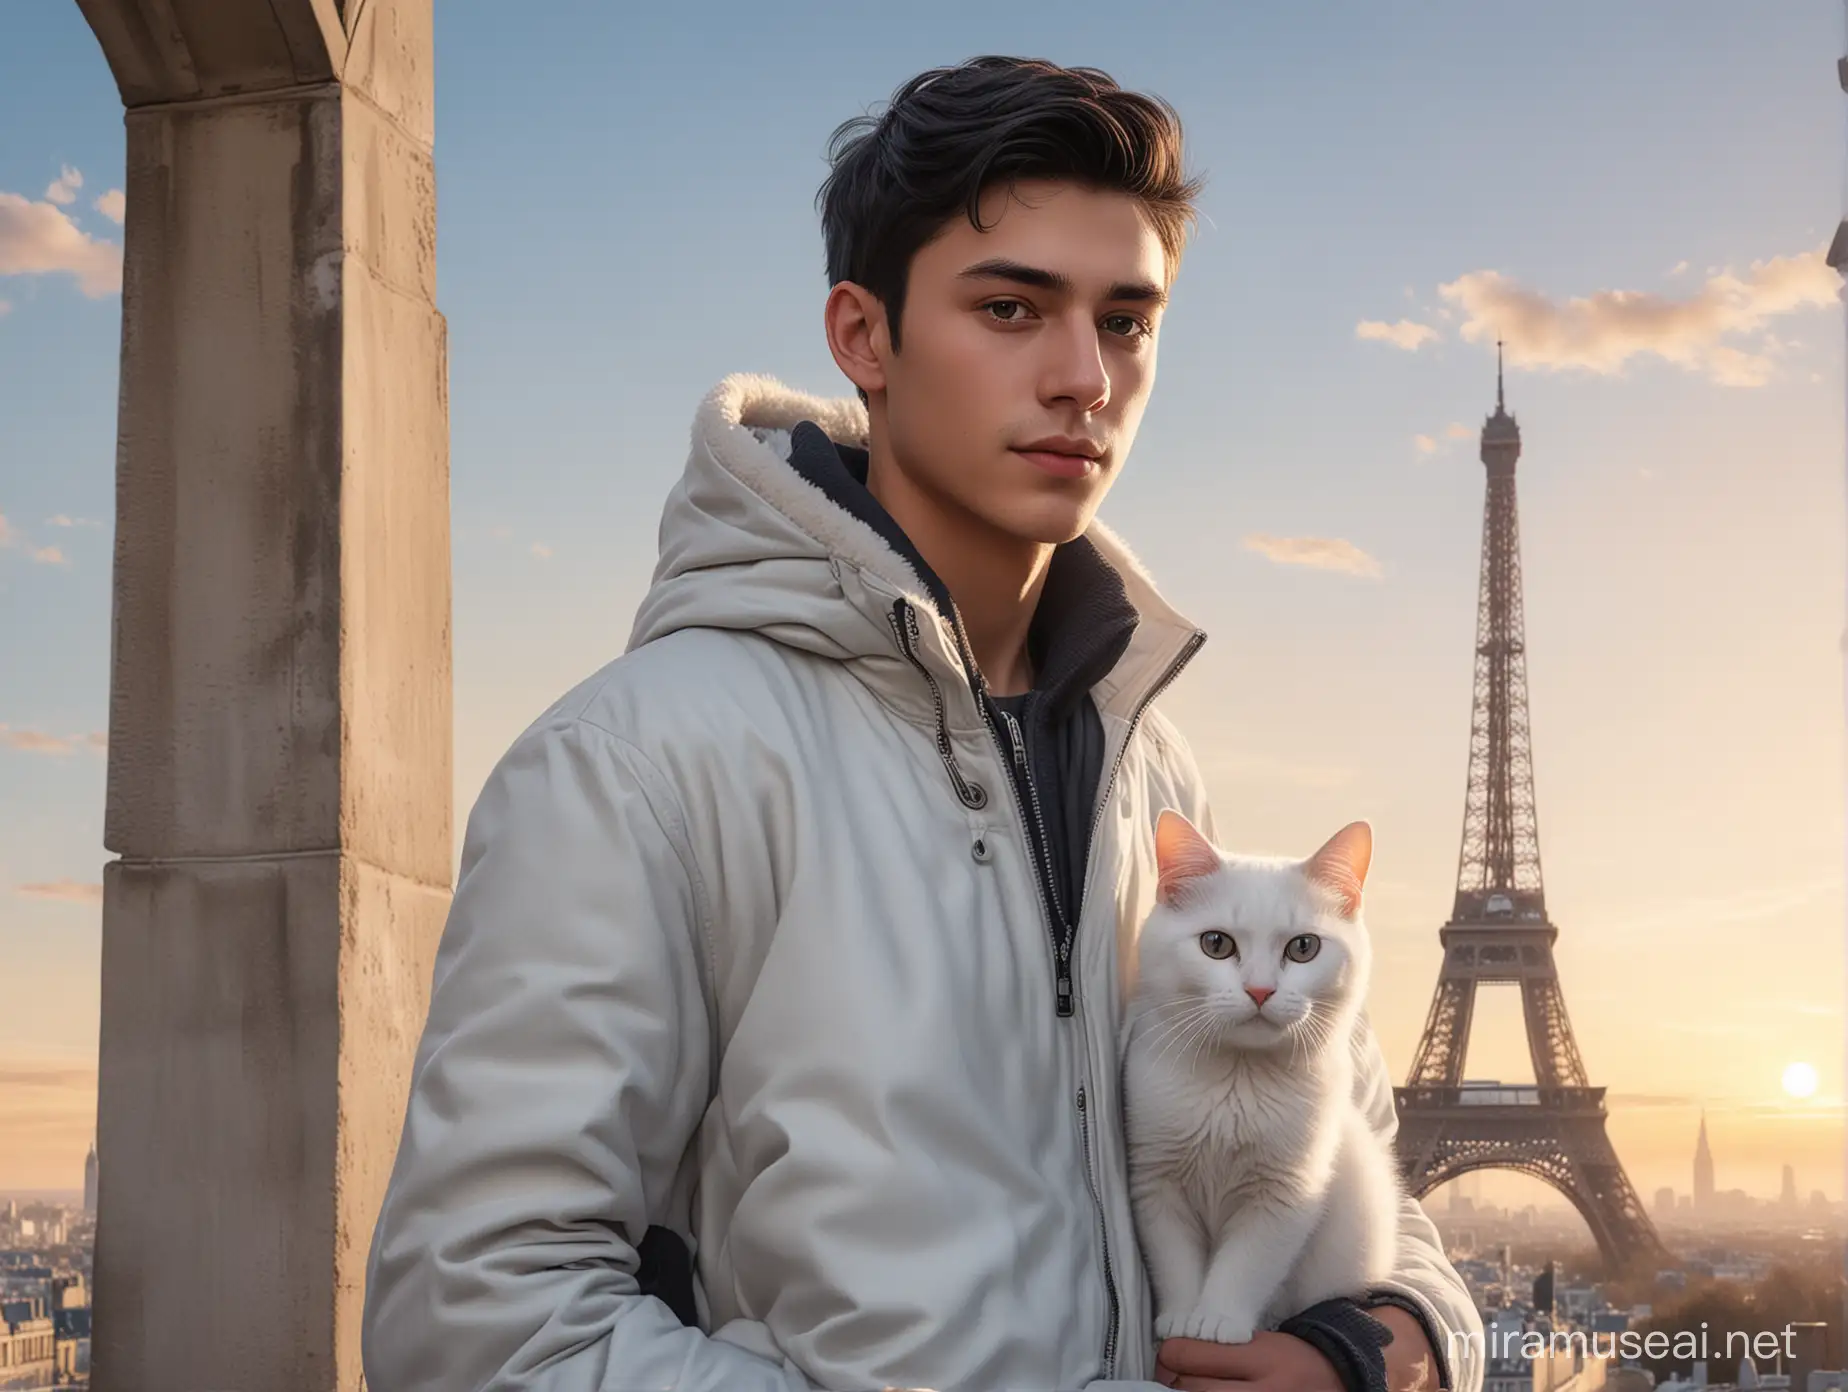 menampilkan menara eiffel yang tinggi, seorang pemuda sangat tampan, berusia 18 tahun, berambut hitam dan pendek, memakai jaket musim dingin,sedang berdiri bersama seekor kucing putih saat pagi hari, Ultra Realistic